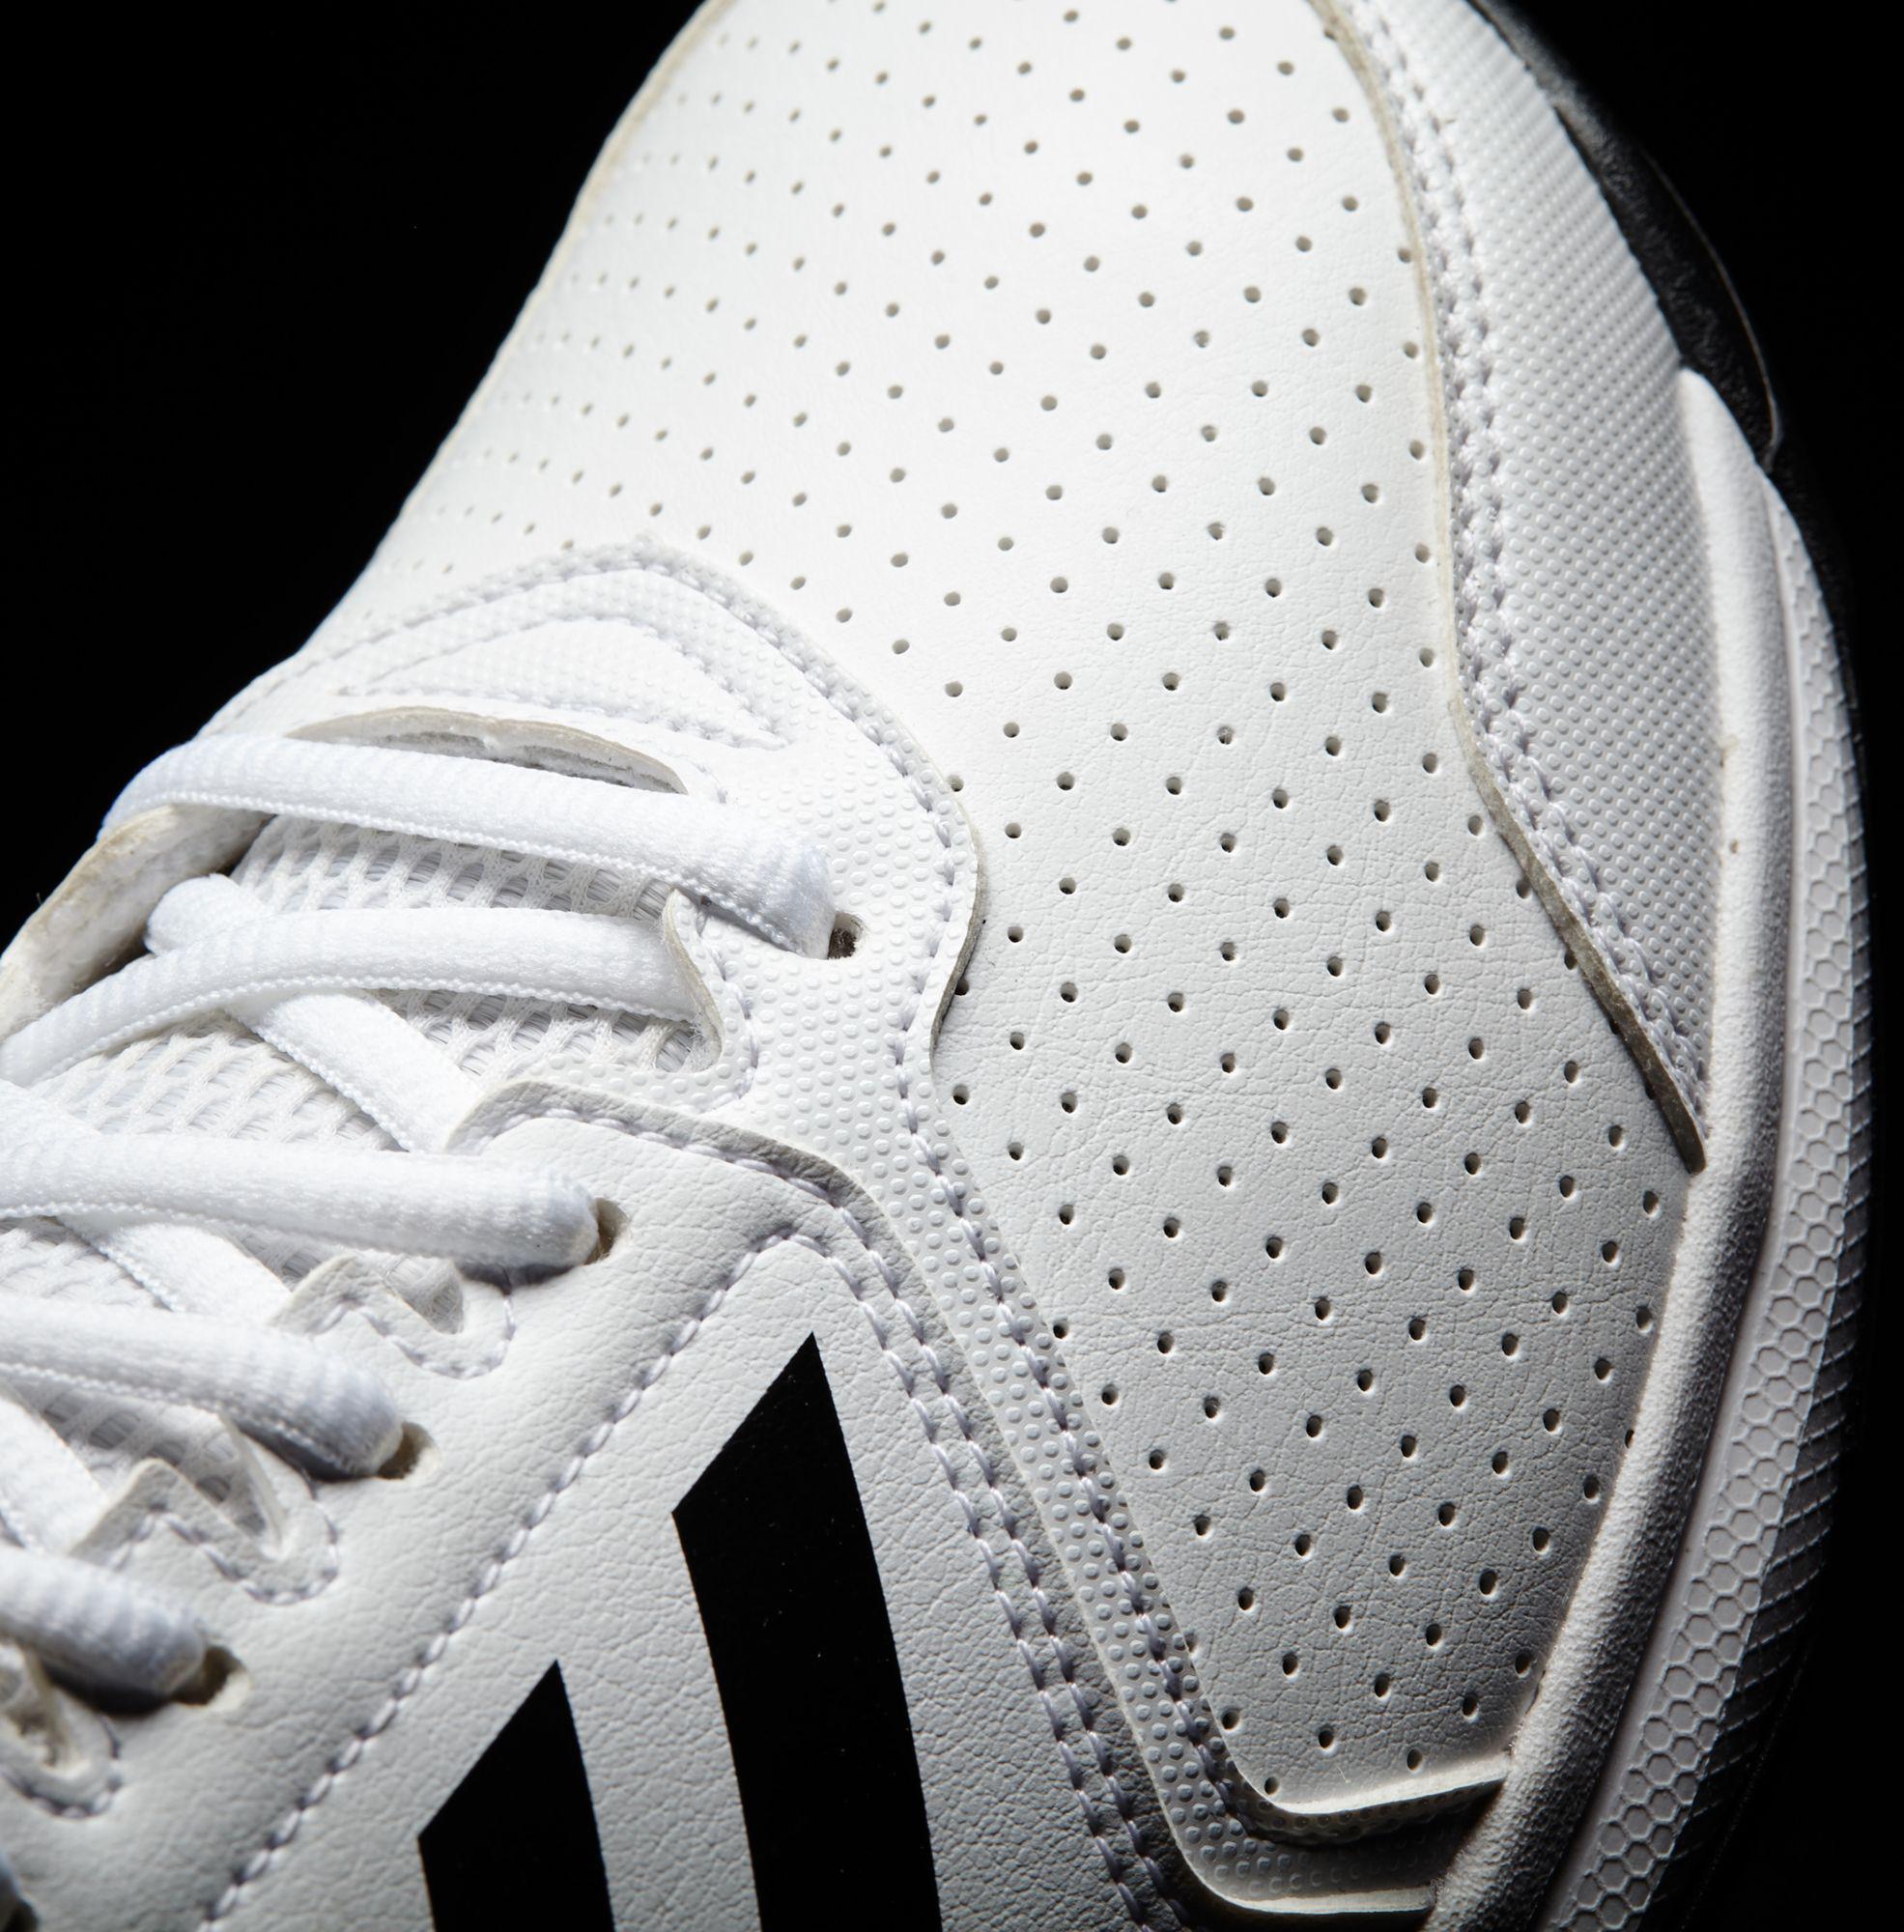 adidas men's adizero attack tennis shoes